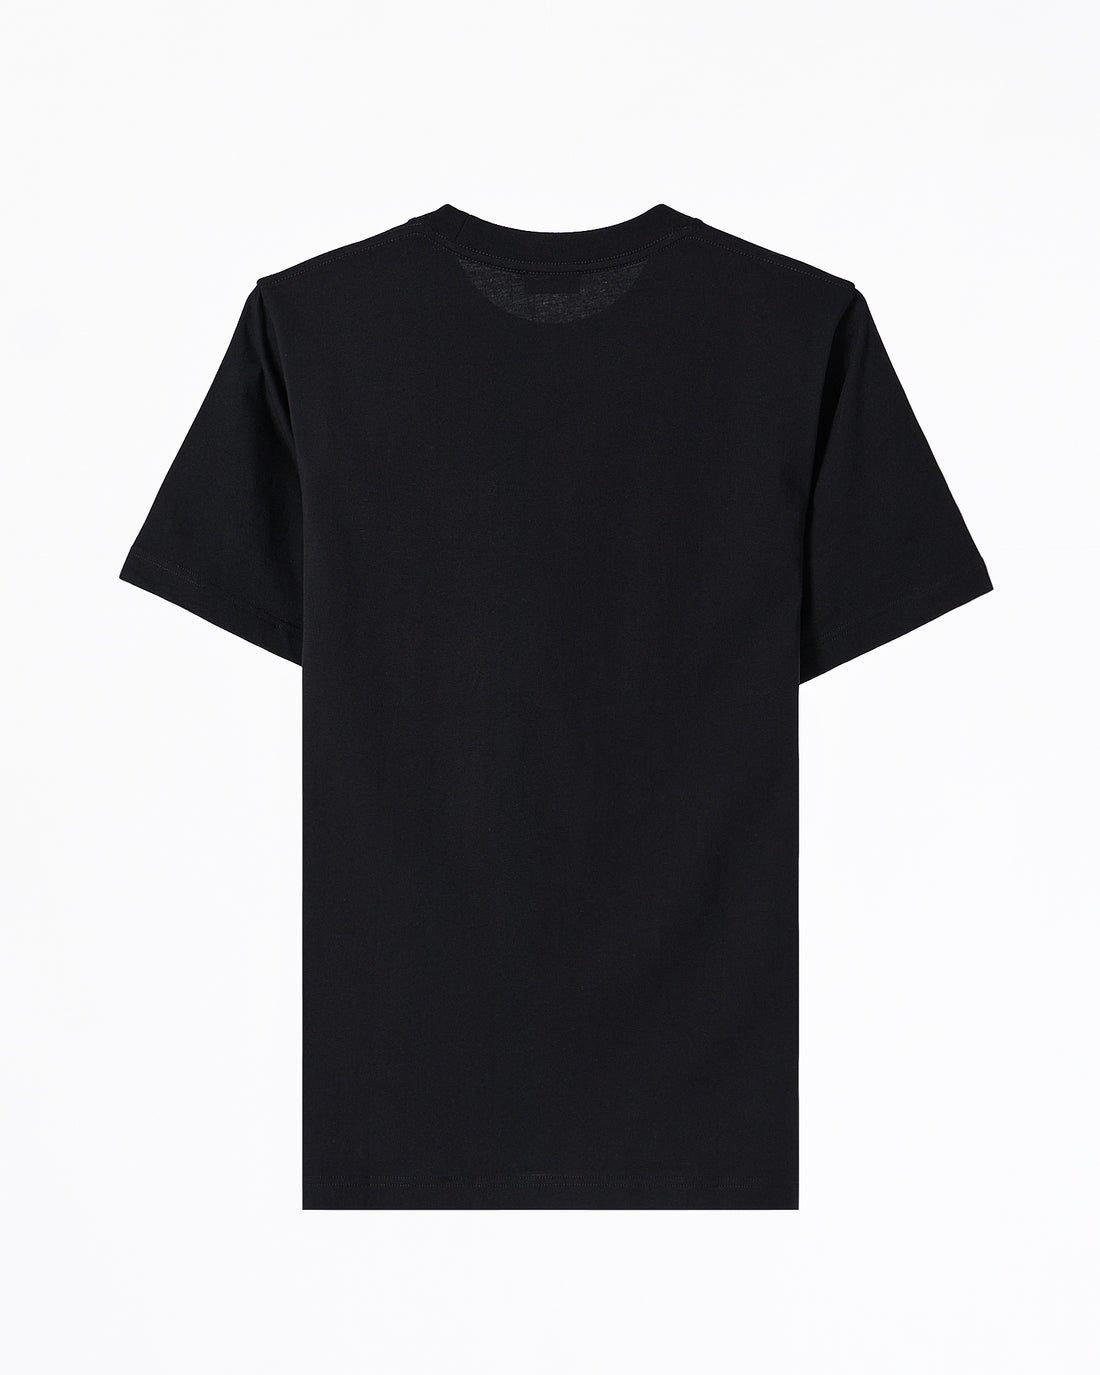 CD Designer Unisex Black Knit T-Shirt 59.90